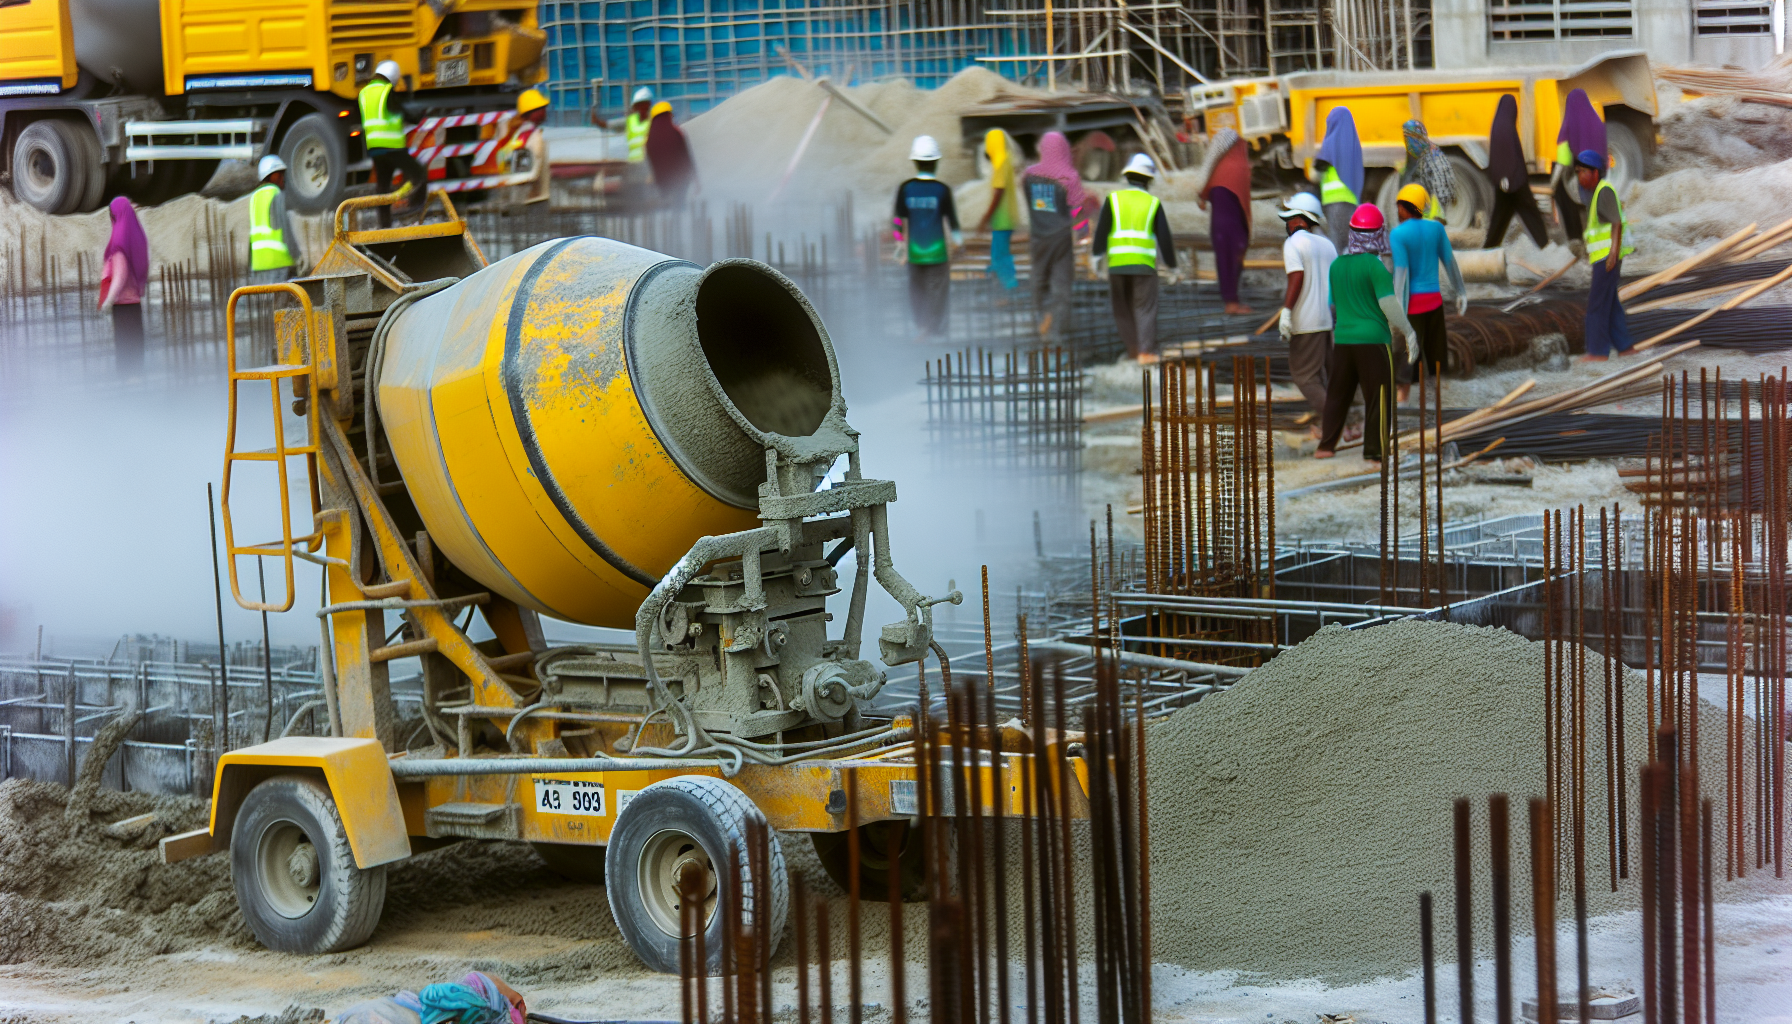 Towable concrete mixer on construction site